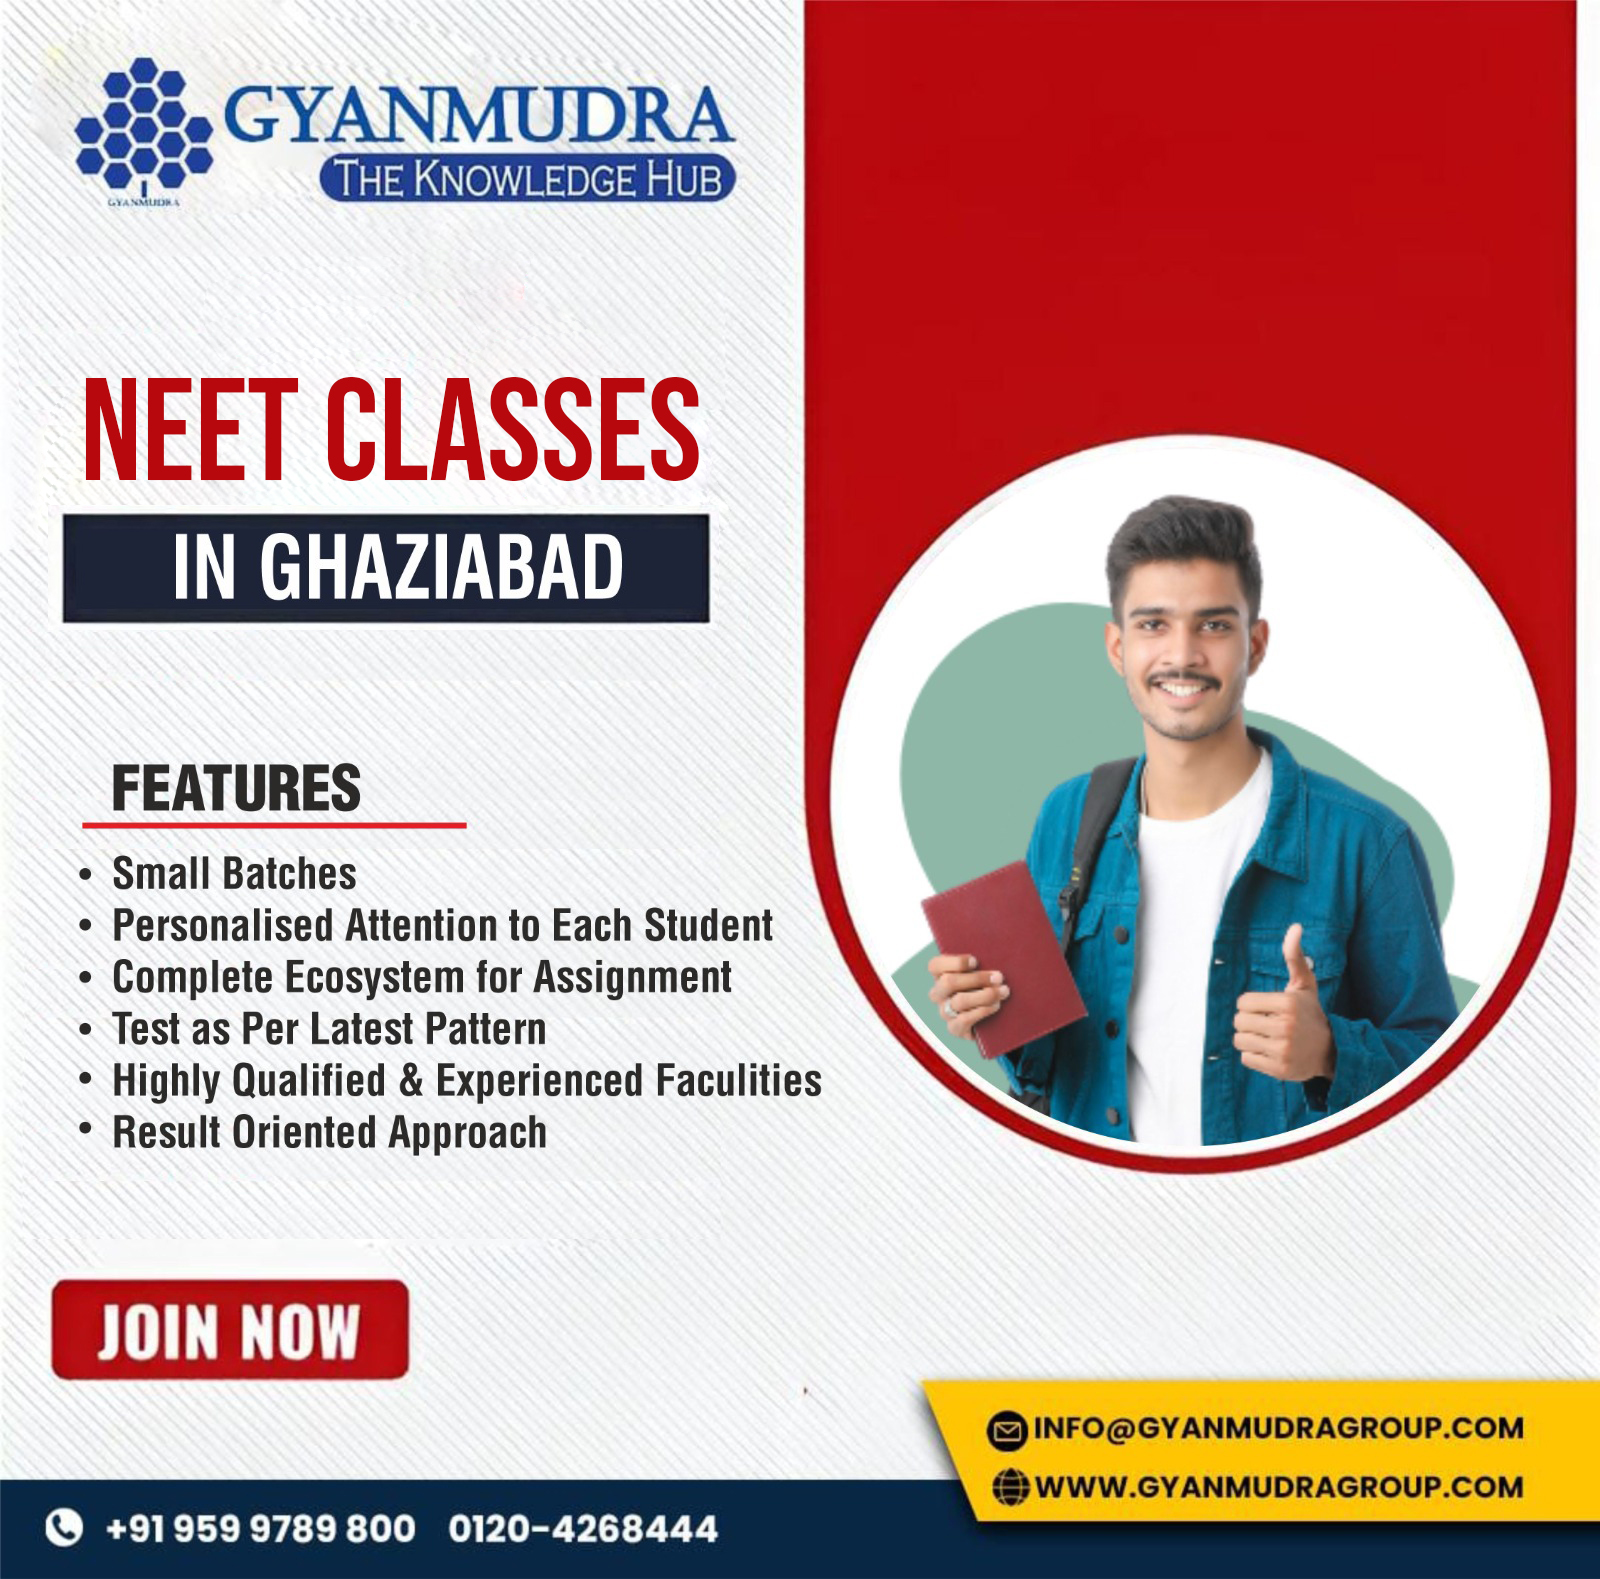 Neet Classes In Ghaziabad
